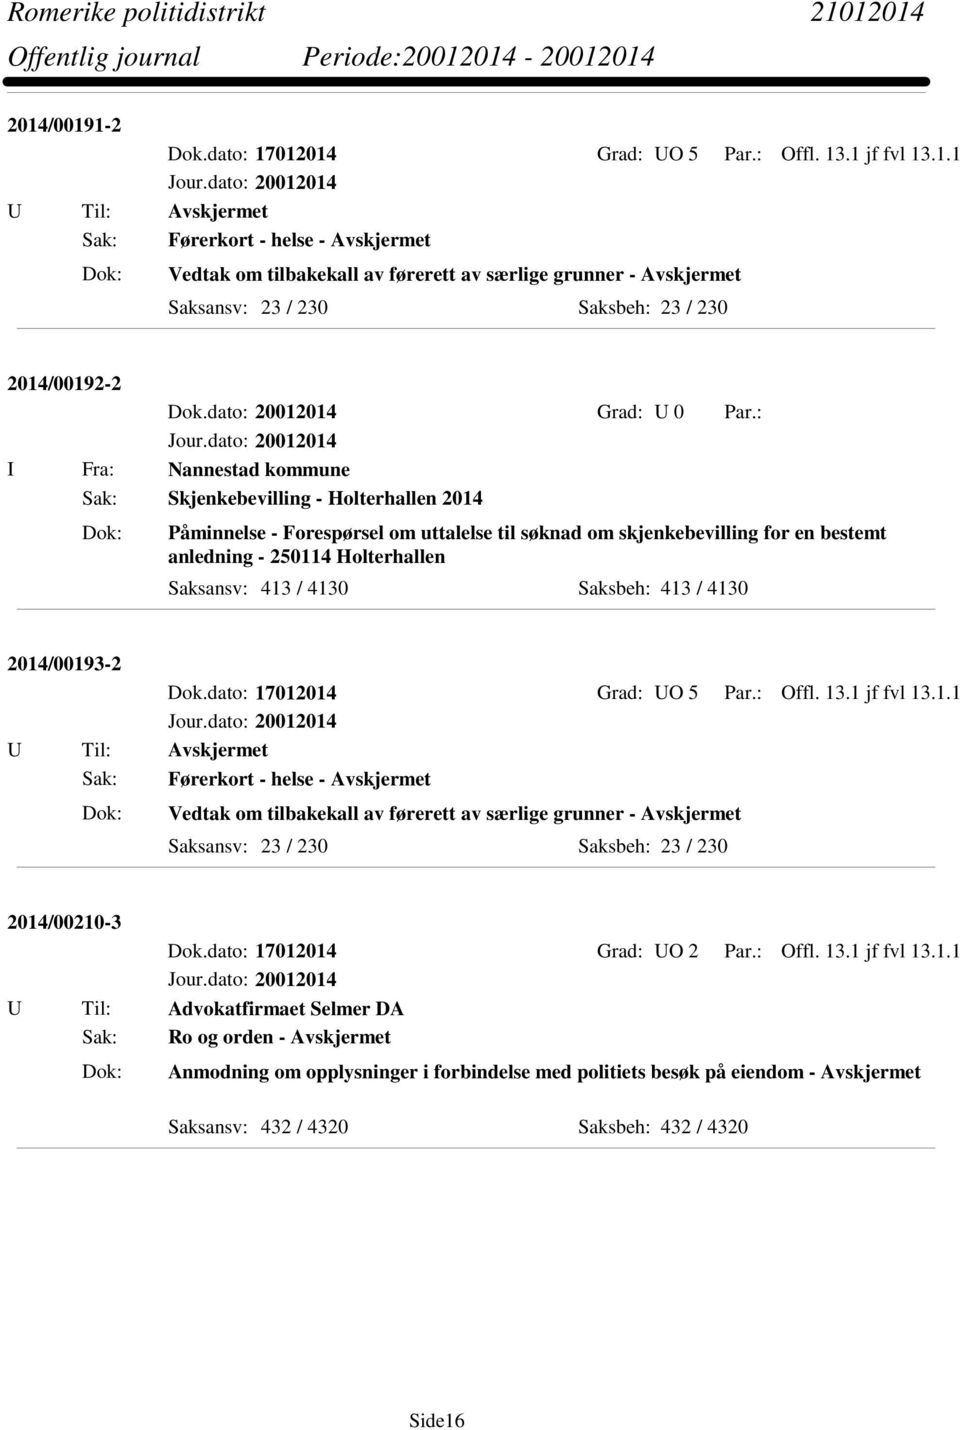 2014/00193-2 Sak: Førerkort - helse - Avskjermet Vedtak om tilbakekall av førerett av særlige grunner - Avskjermet 2014/00210-3 Dok.dato: 17012014 Grad: UO 2 Par.: Offl. 13.